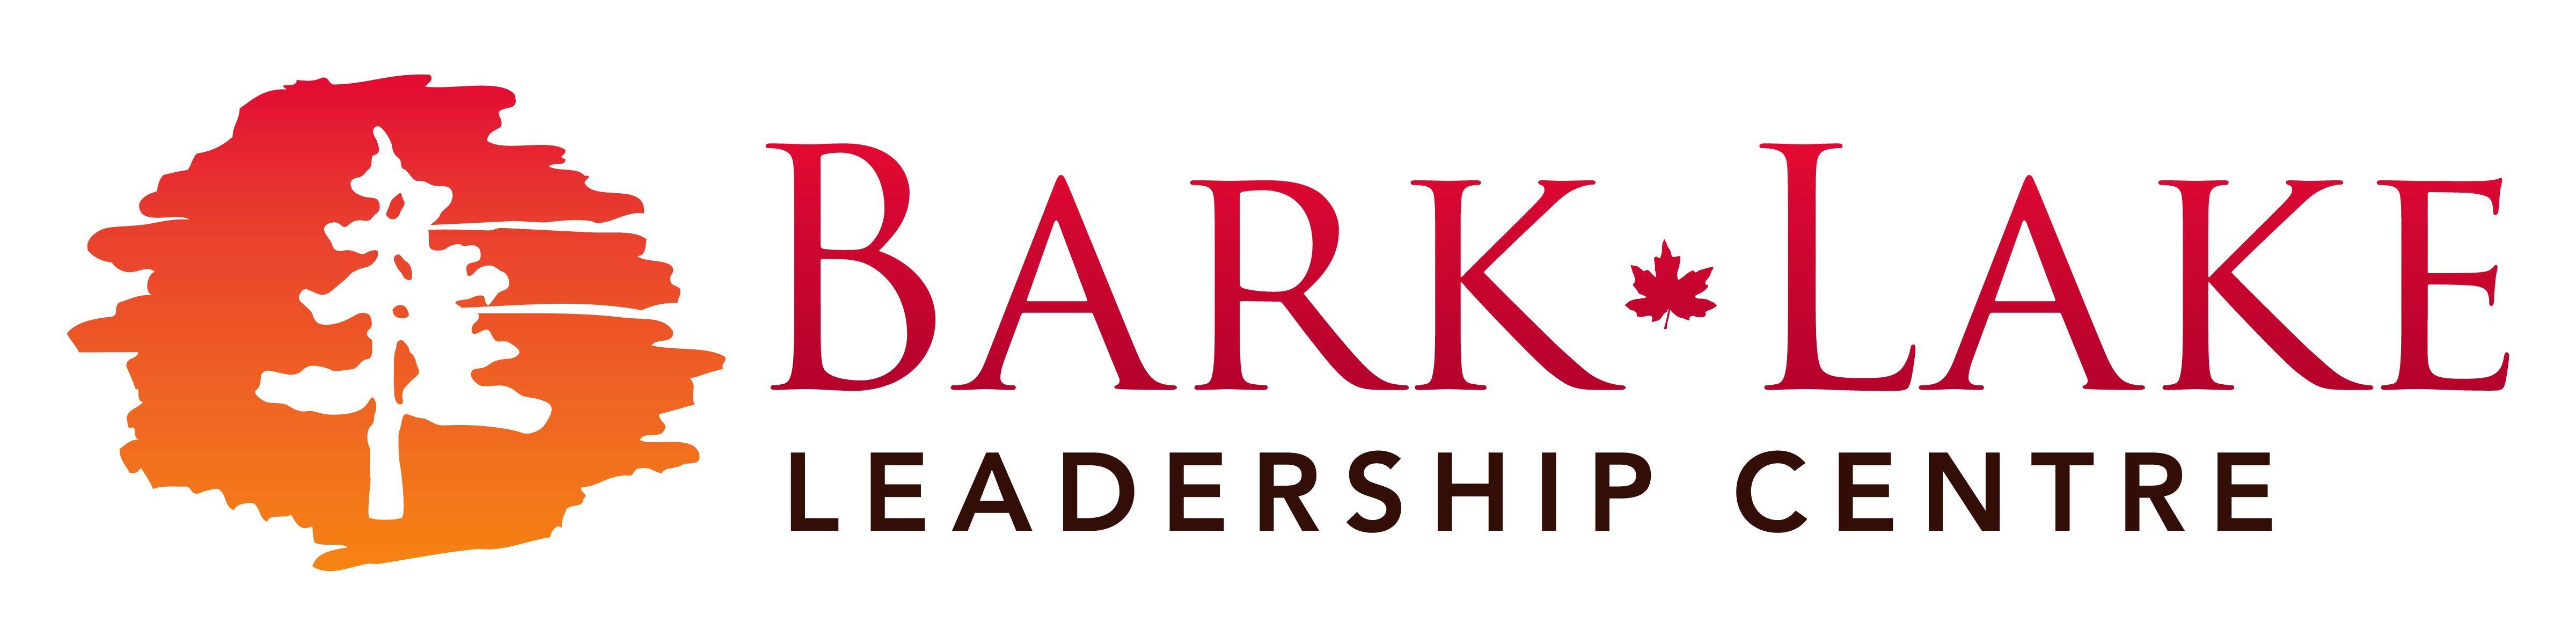 The Bark Logo - Bark Lake Logo Highlands Chamber of Commerce